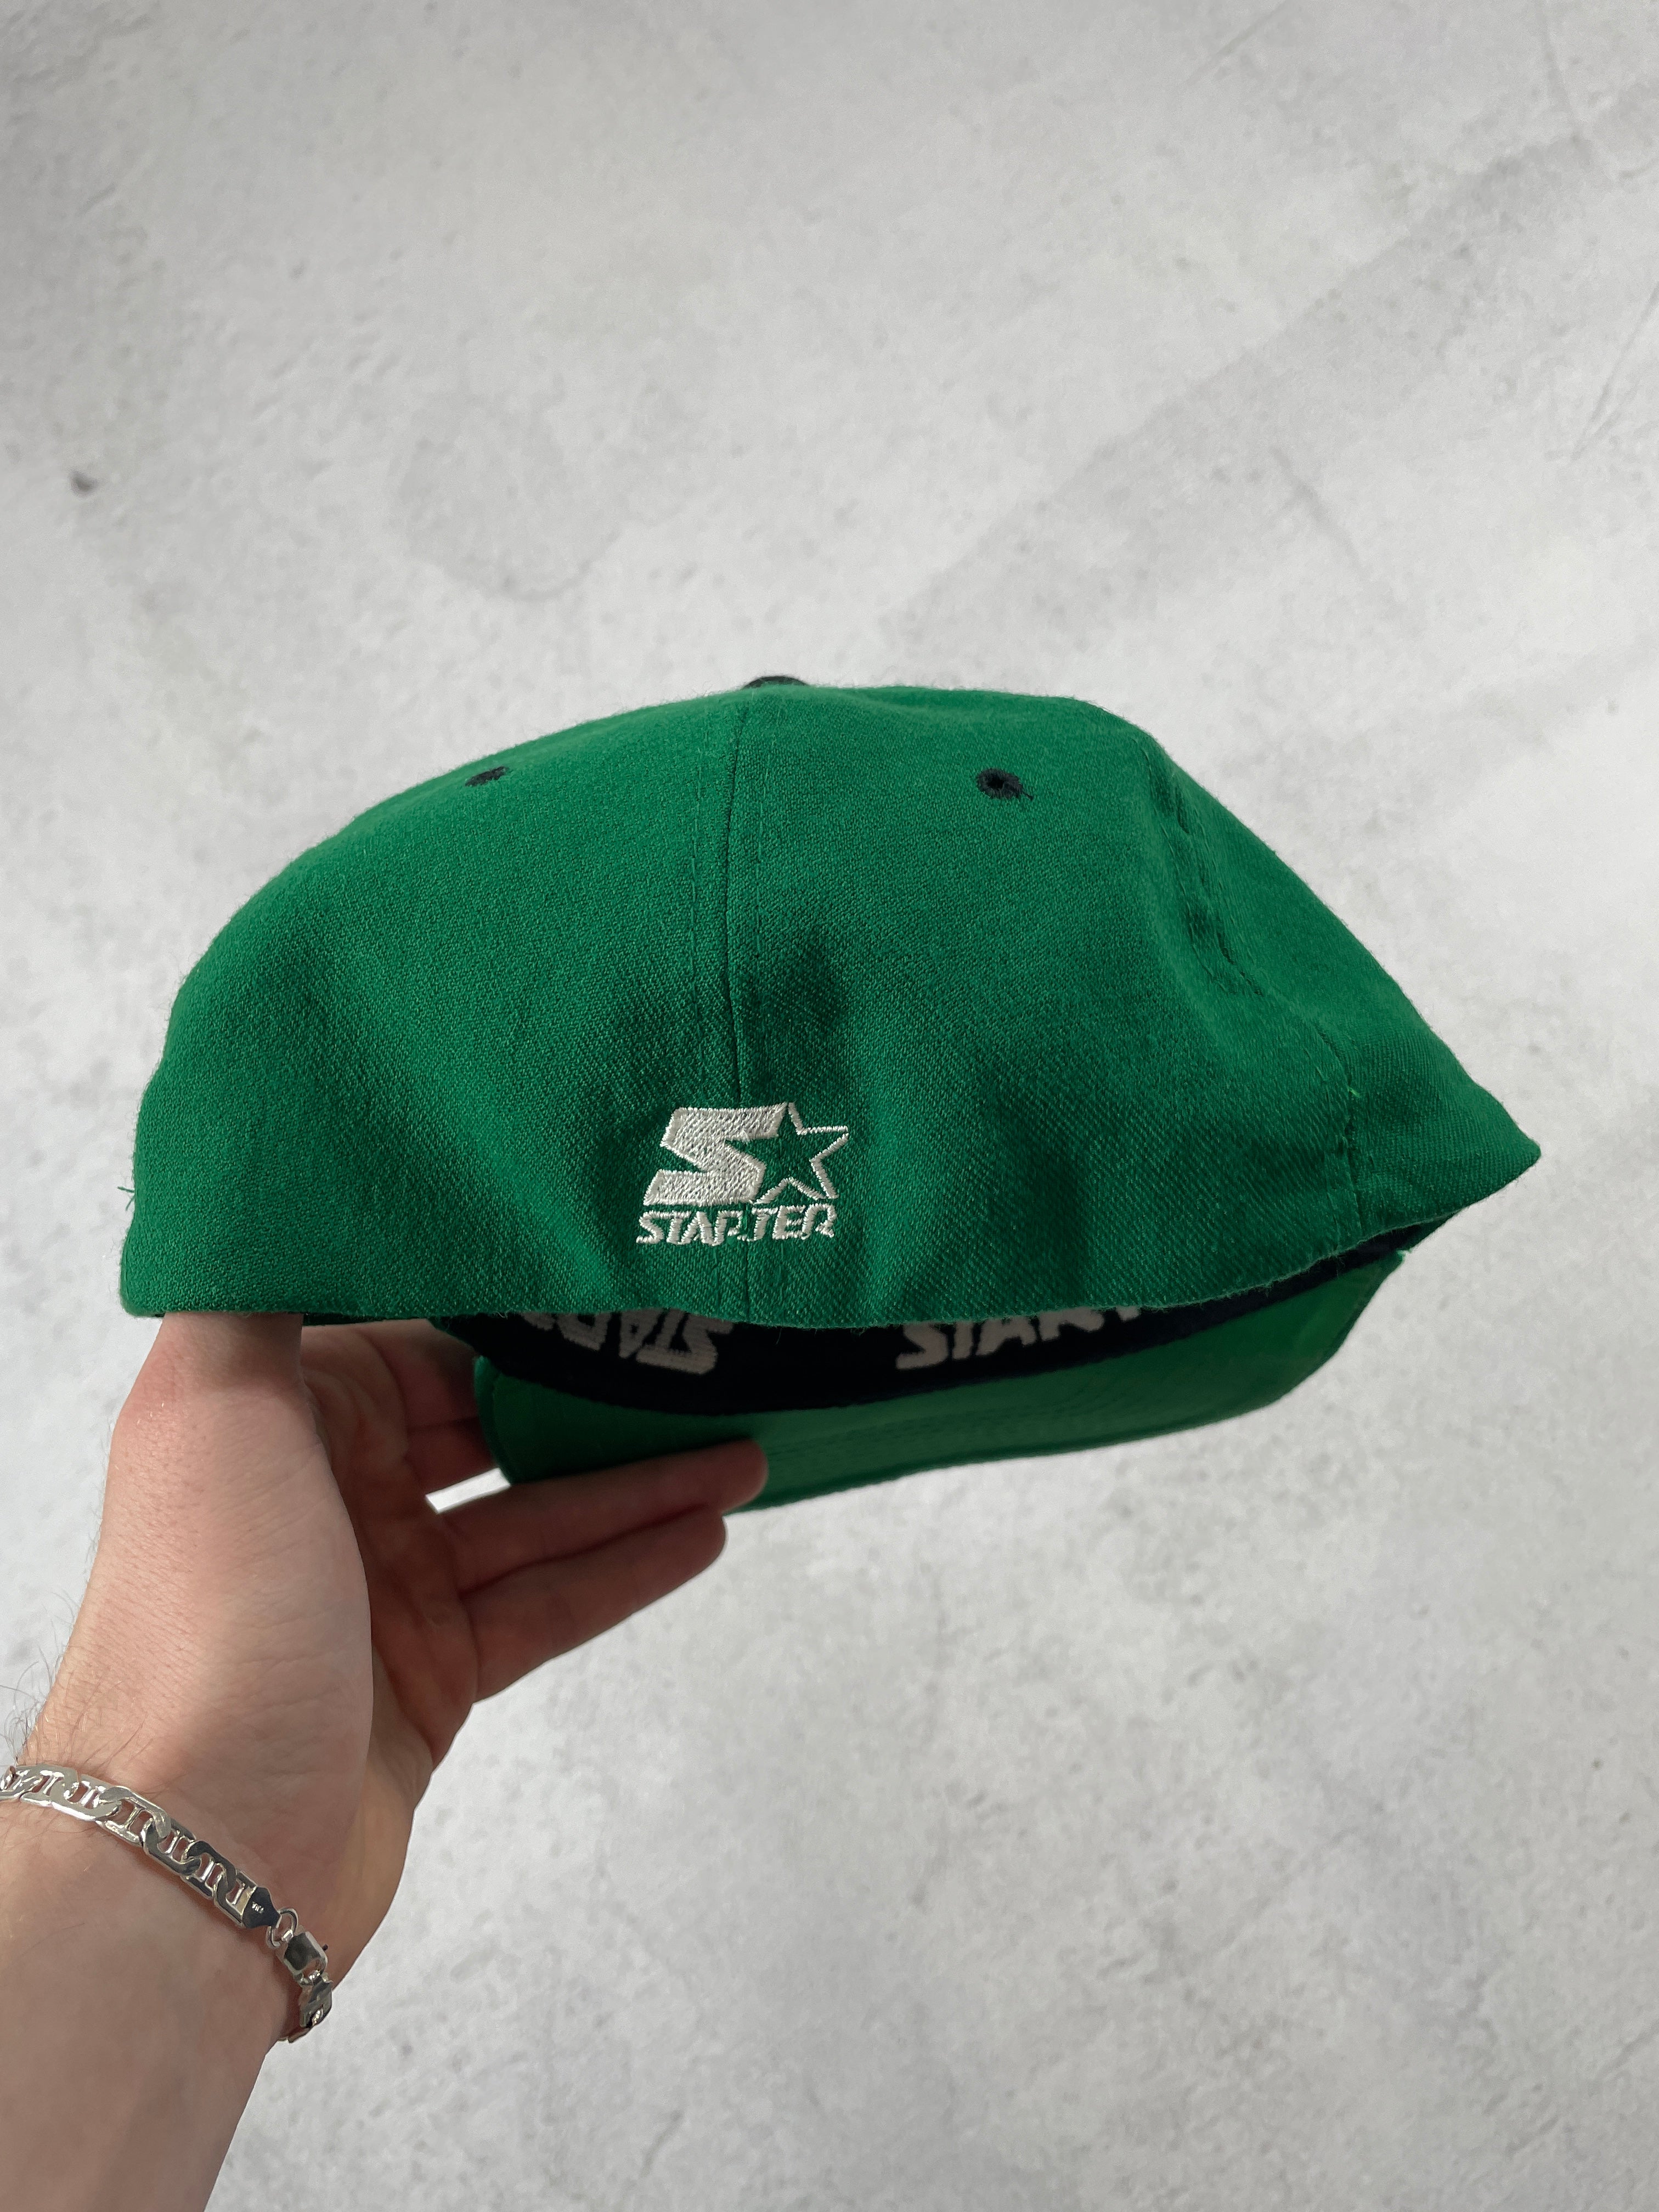 Vintage NBA Boston Celtics Fitted Hat - 7 3/4